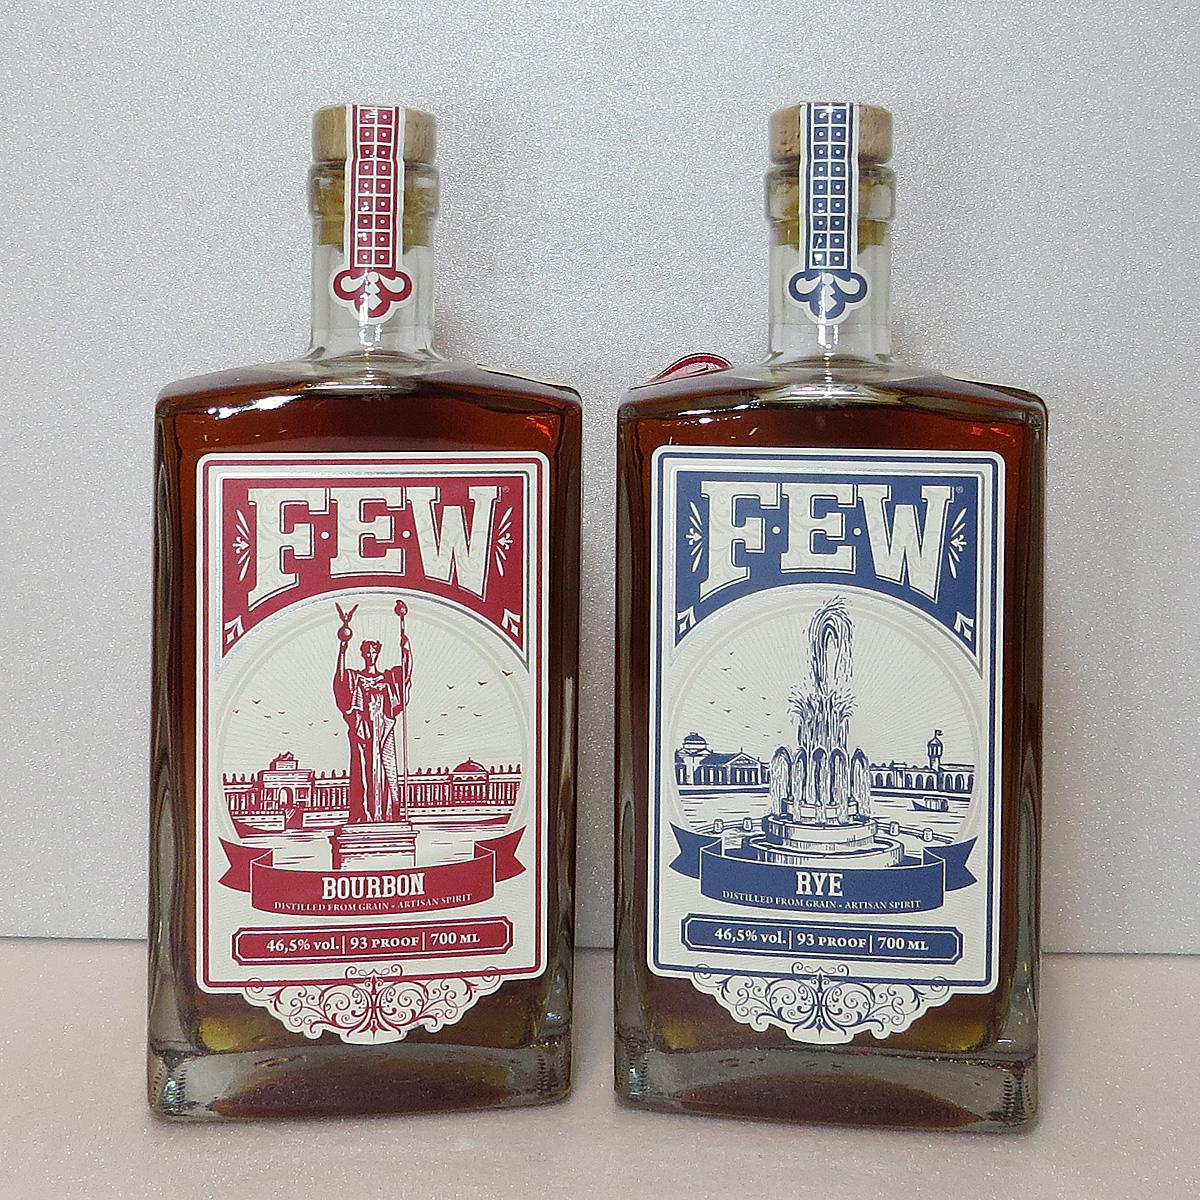 Few Bourbon and Few Rye